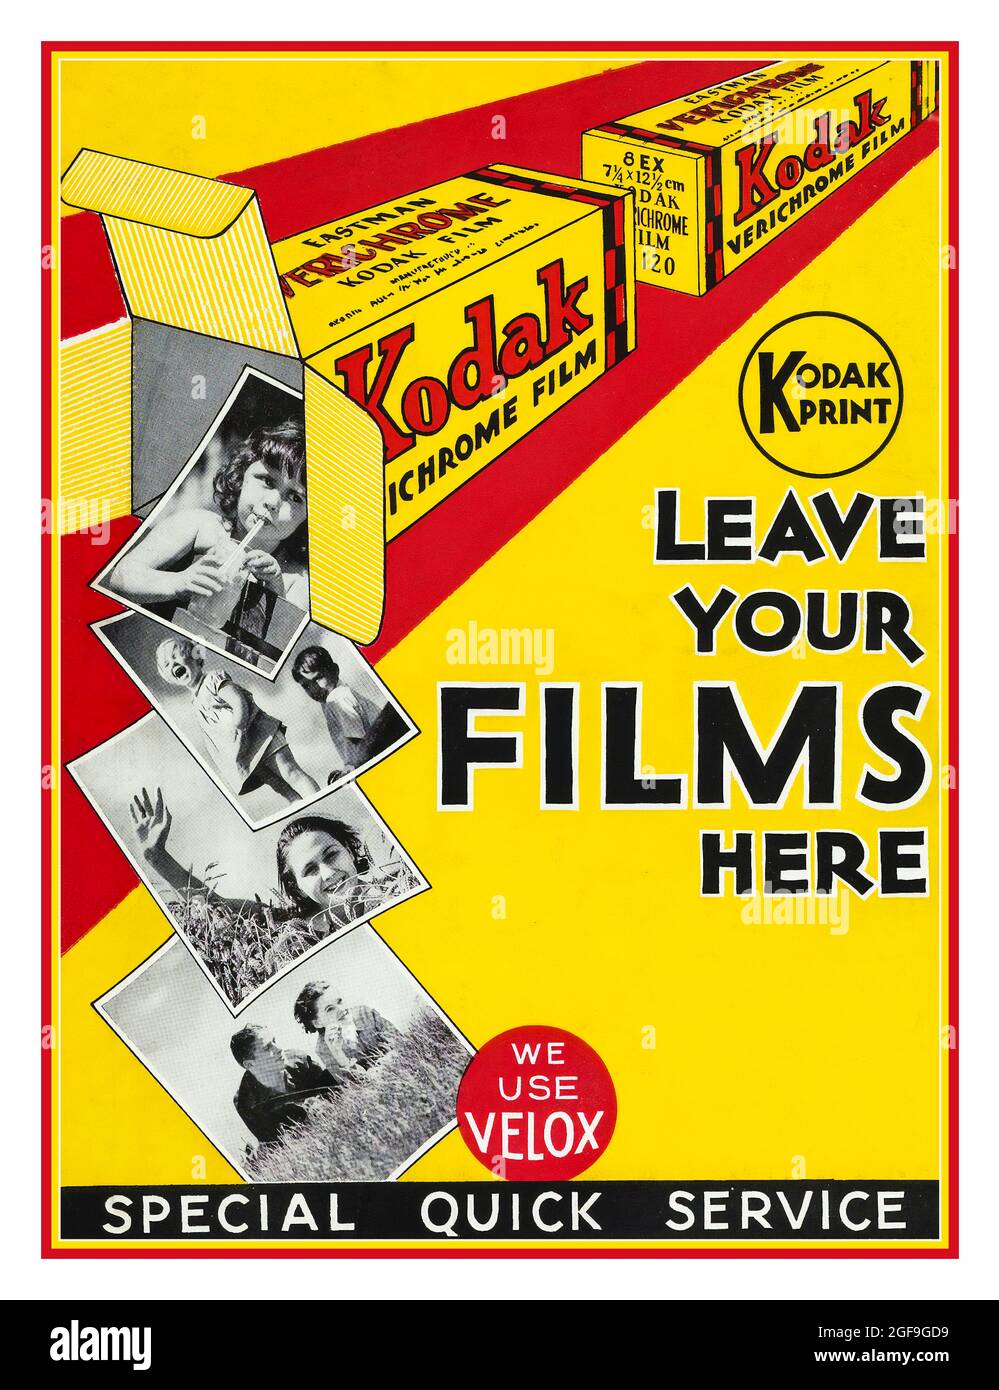 Archivieren Sie das Kodak Entwicklungs- und Druckservice-Poster. ‘ Leave your Films here’ B&W Verichrome Rollfilmboxen mit B&W Prints, die aus den 30er- bis 40er-Jahren ‘special Quick Service ‘ herauskommen Stockfoto